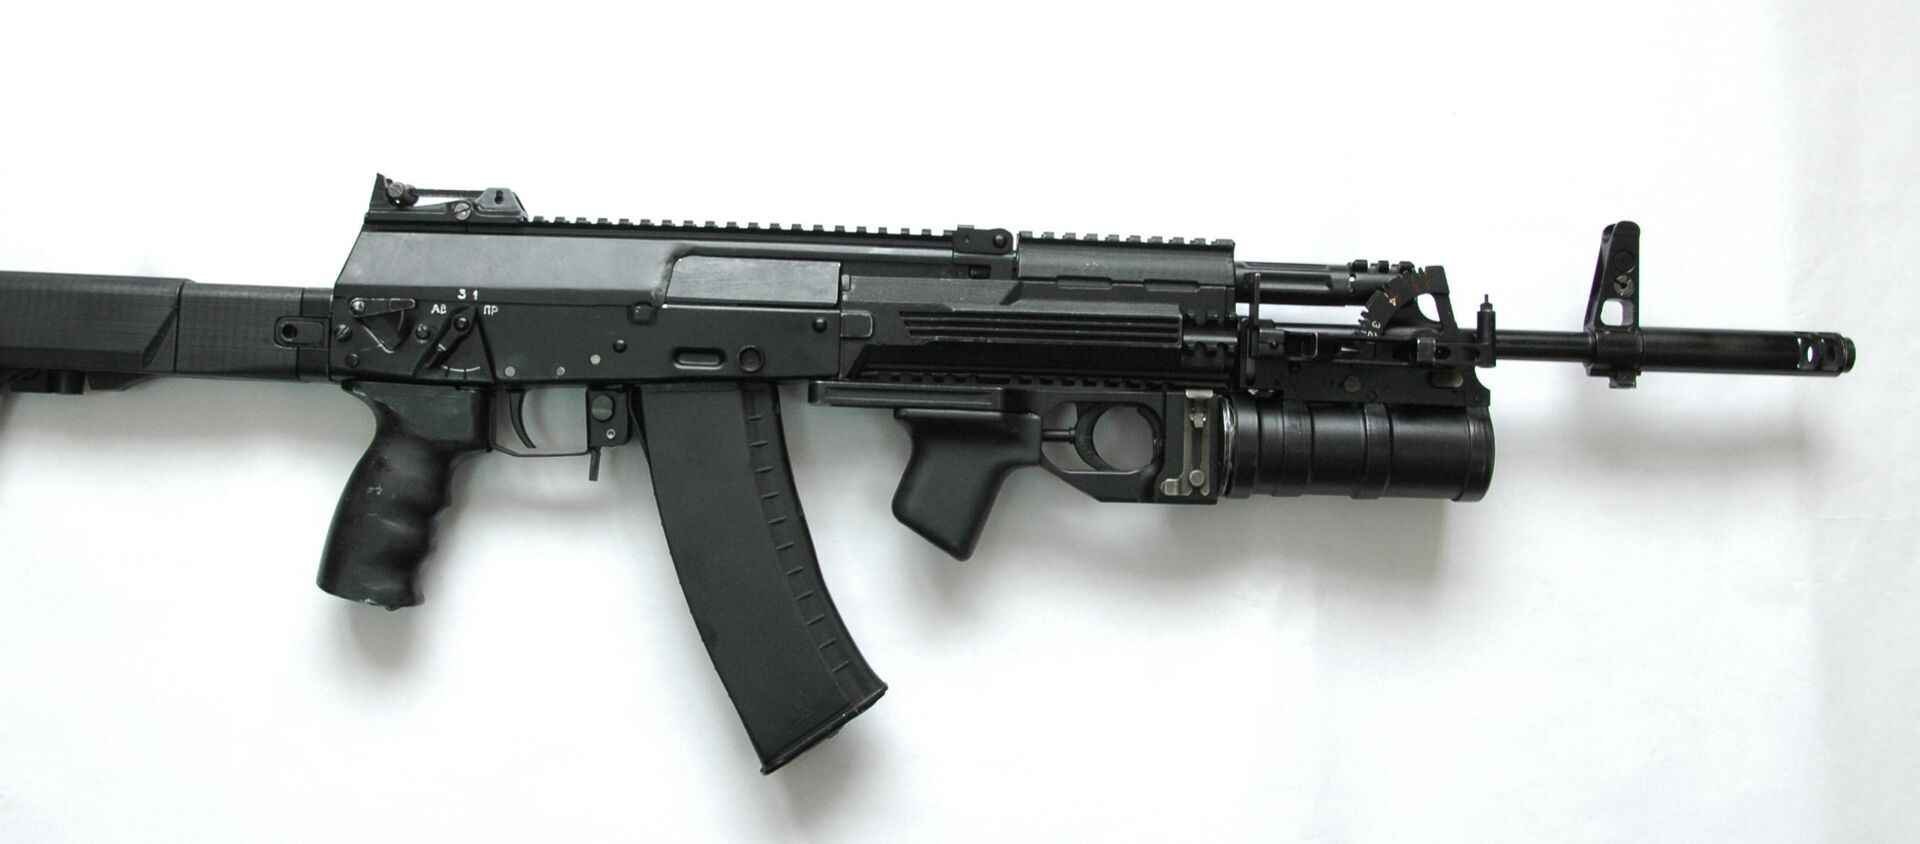 Novi model puške kalašnjikov AK-12 iz 2012. godine - Sputnik Srbija, 1920, 23.12.2020